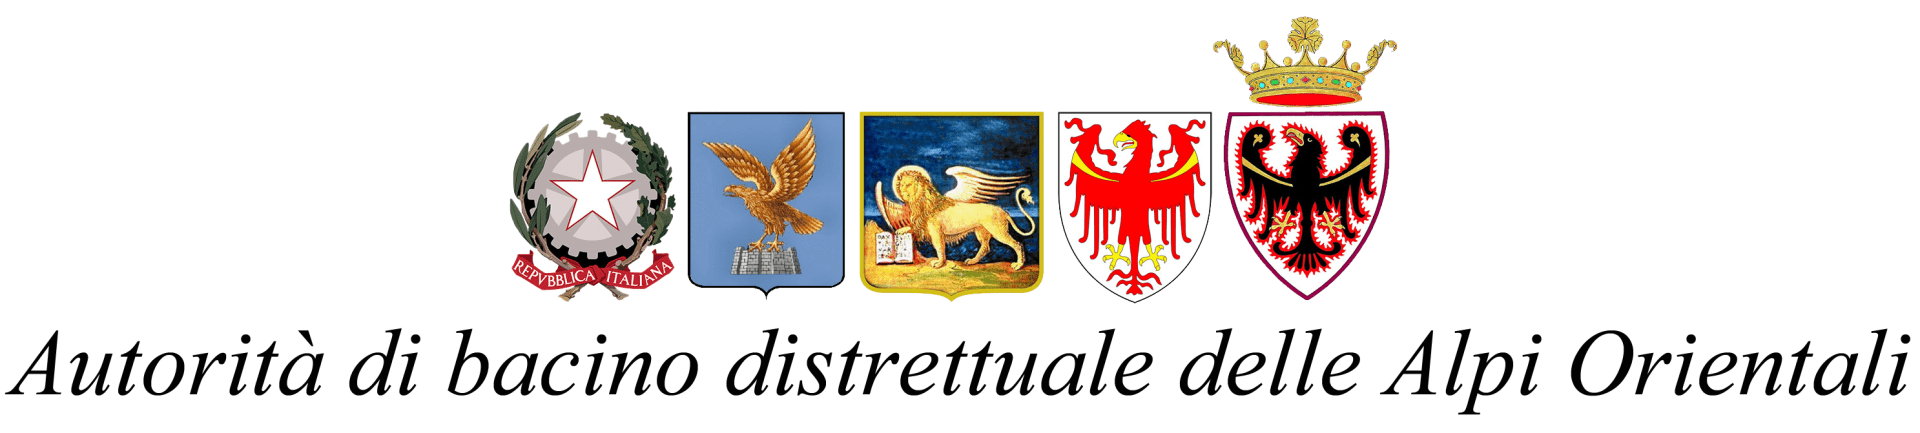 Autorità di bacino distrettuale delle Alpi Orientali